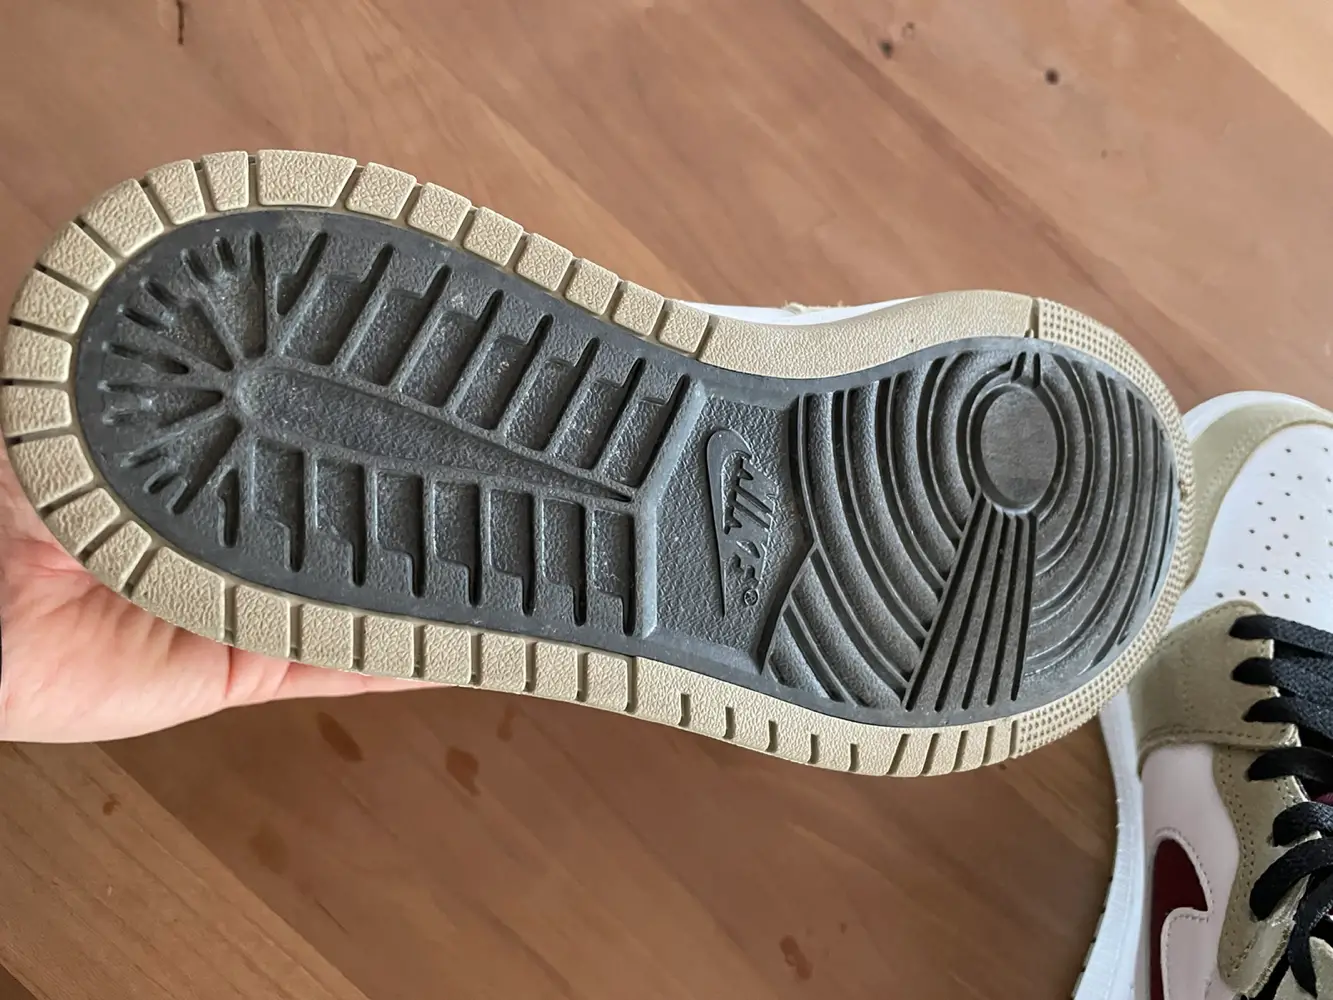 Nike Air Jordan Støvler